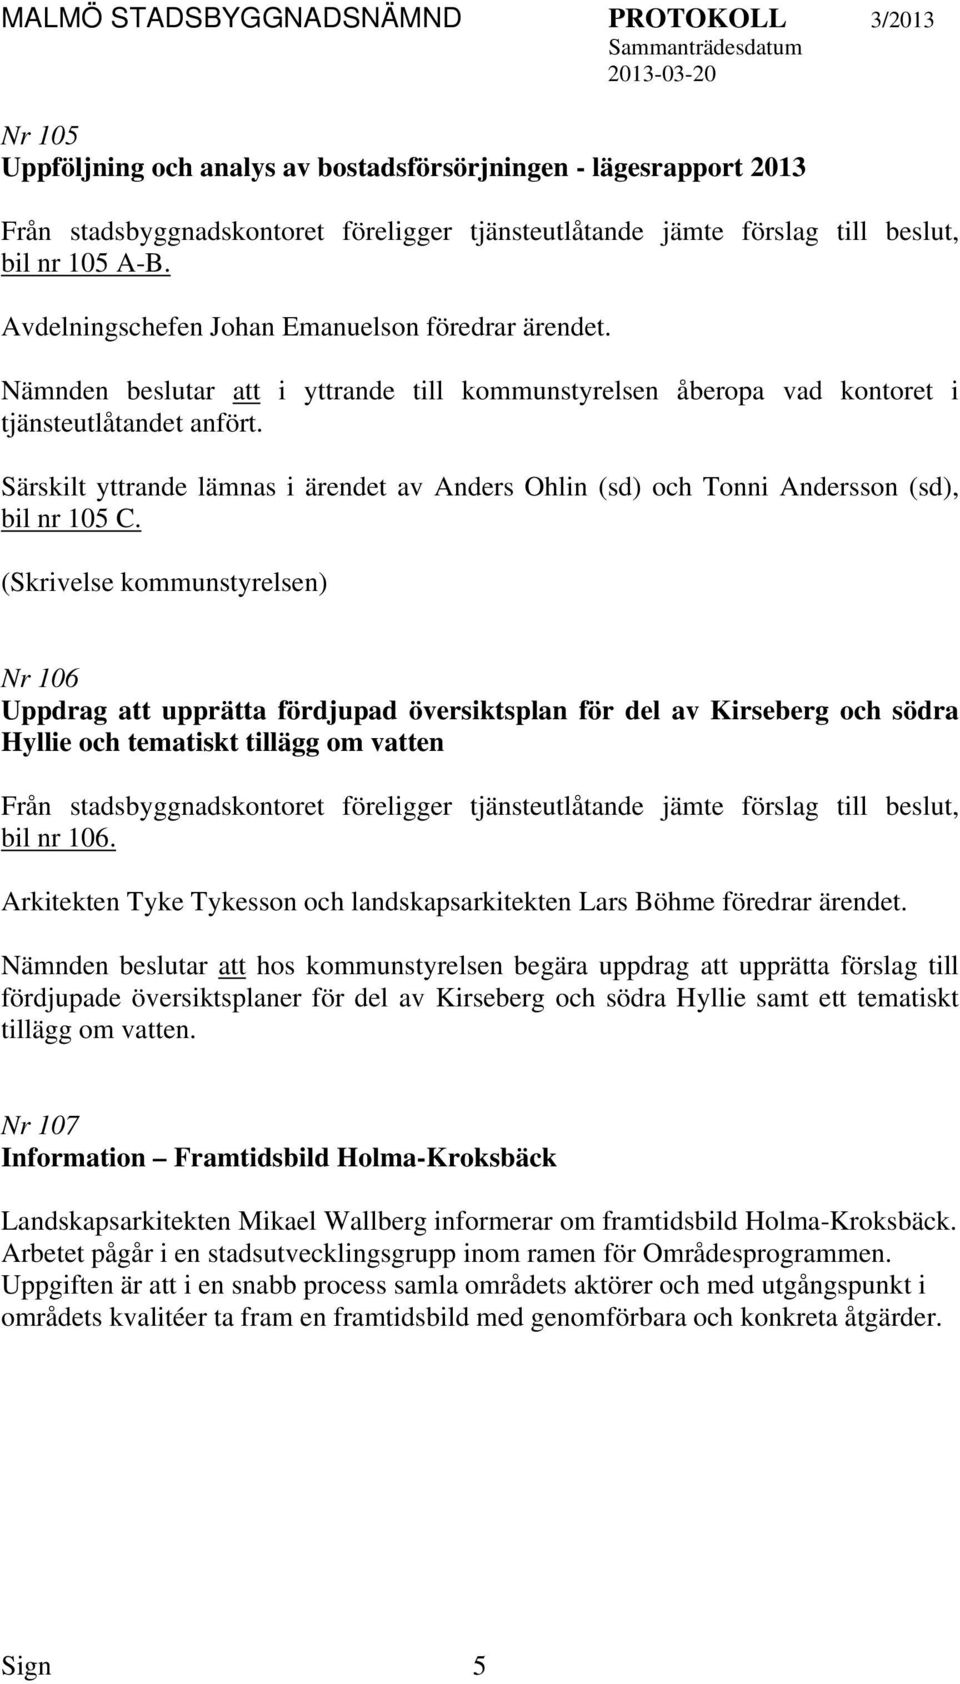 (Skrivelse kommunstyrelsen) Nr 106 Uppdrag upprätta fördjupad översiktsplan för del av Kirseberg och södra Hyllie och tematiskt tillägg om ven bil nr 106.